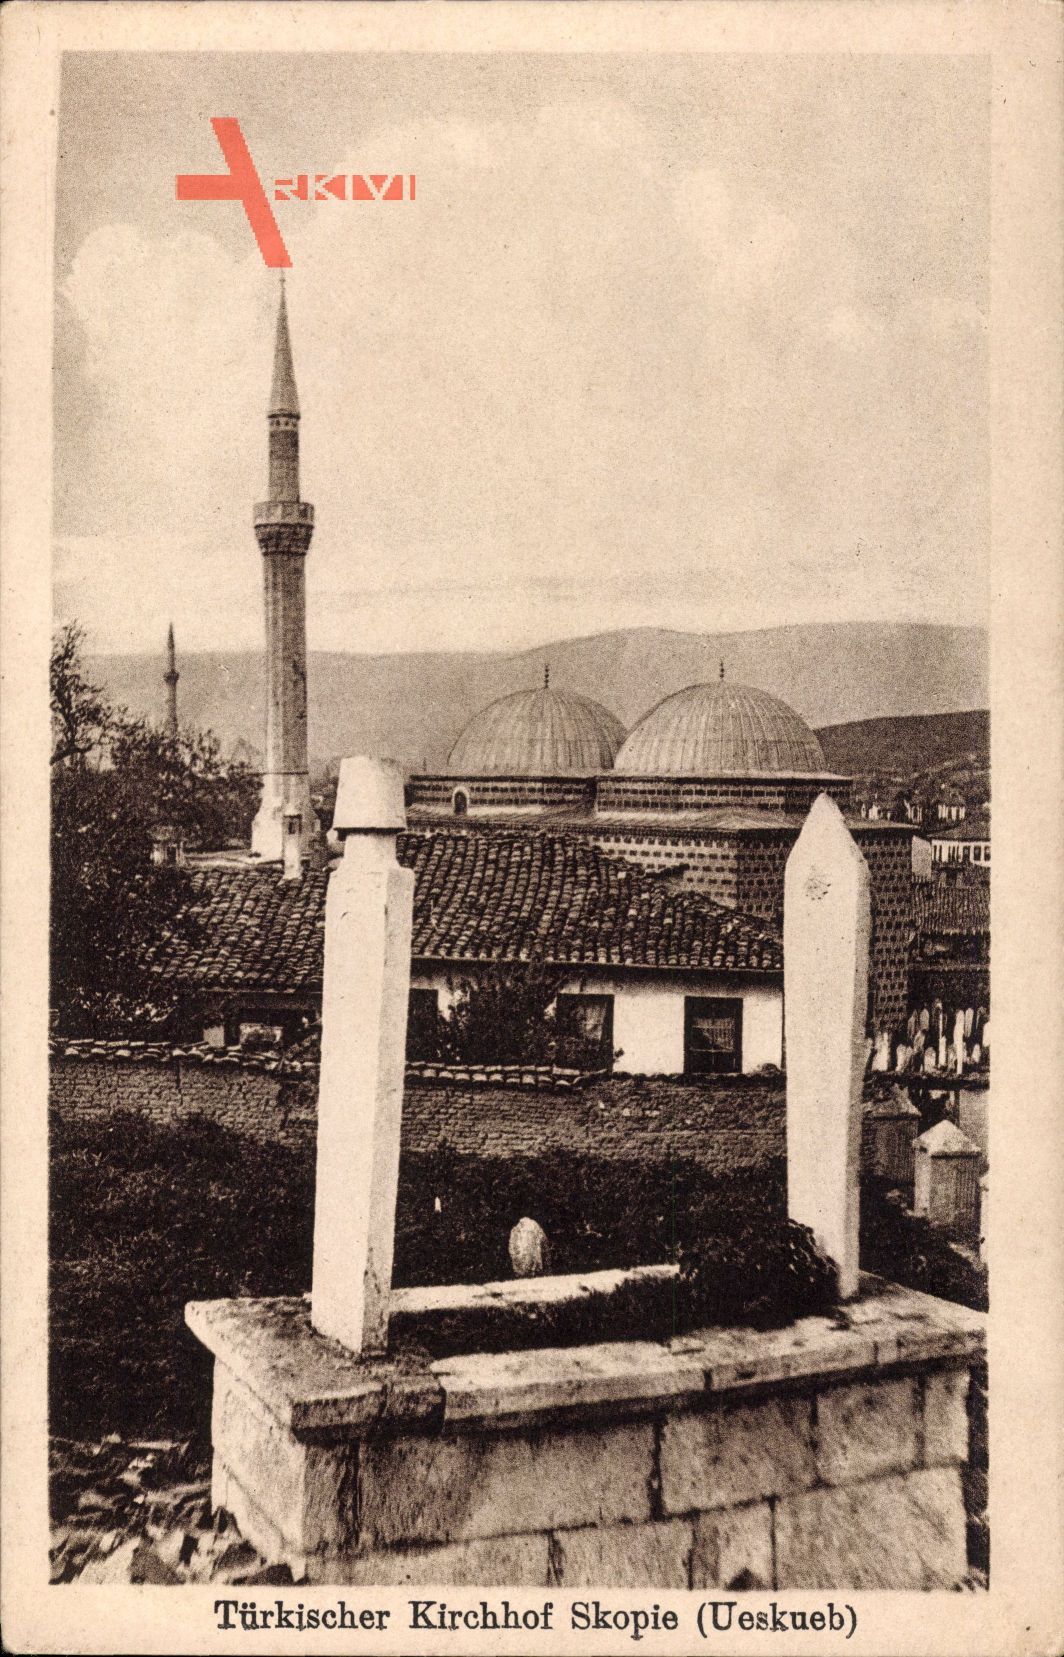 Skopje Ueskueb Mazedonien, Teilansicht vom Türkischen Friedhof, Minarett